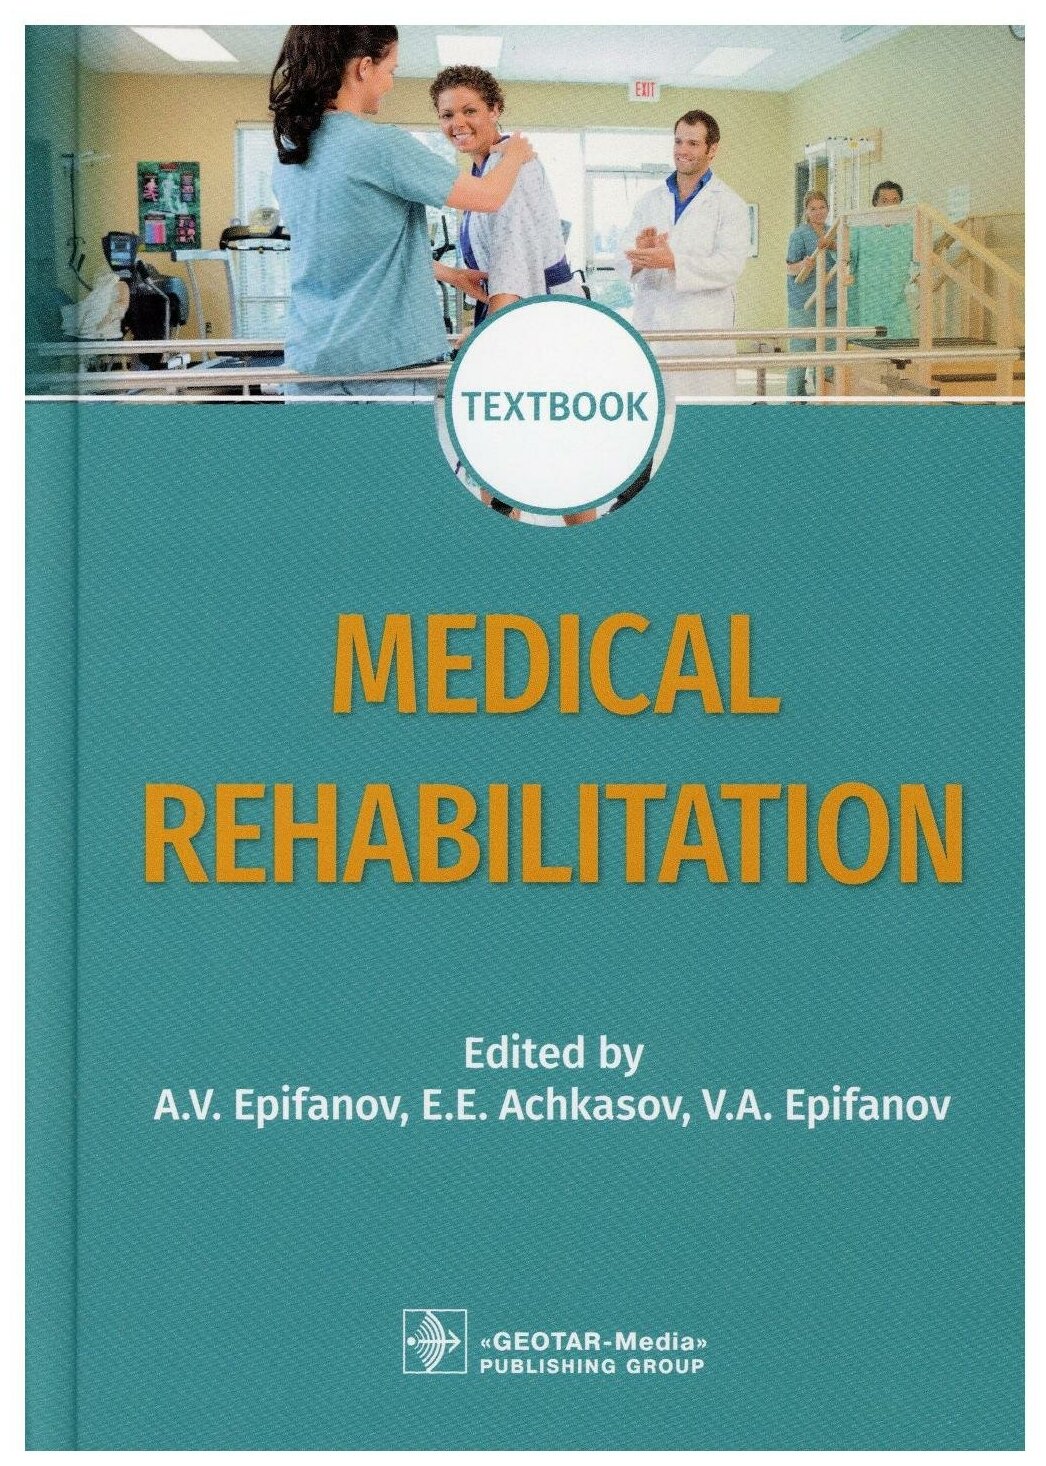 Medical rehabilitation: textbook; книга на английском языке. 2-е изд, перераб. и доп. Гэотар-медиа